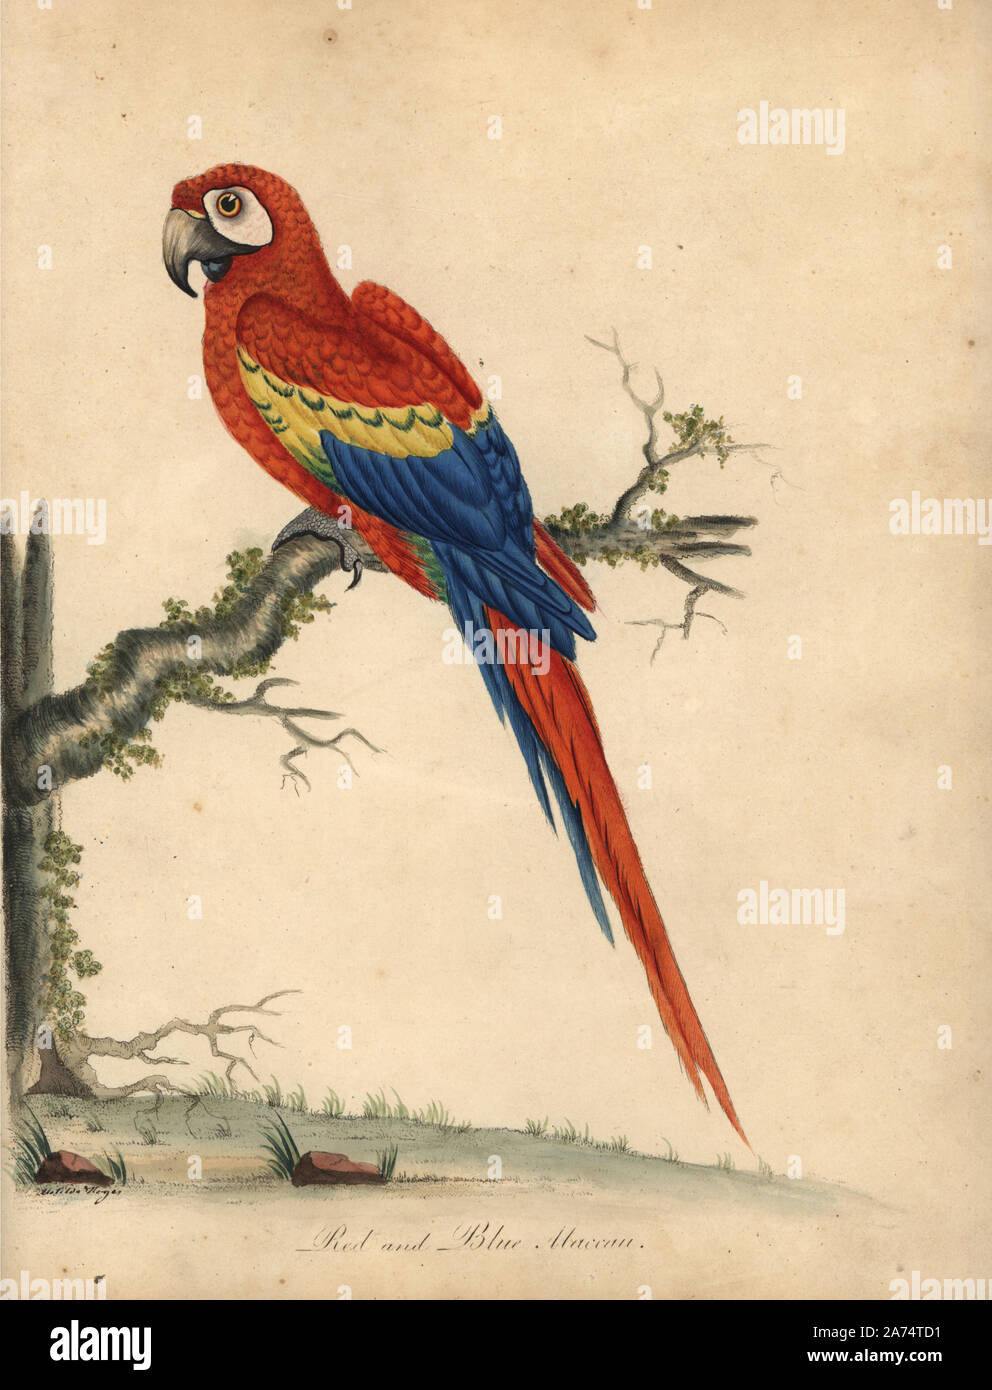 Scarlet Macaw, Ara macao. (Rosso blu, maccaw macao) Handcolored incisione su rame di una illustrazione di William Hayes e sua figlia Matilde da William ritratti di rari e curiosi